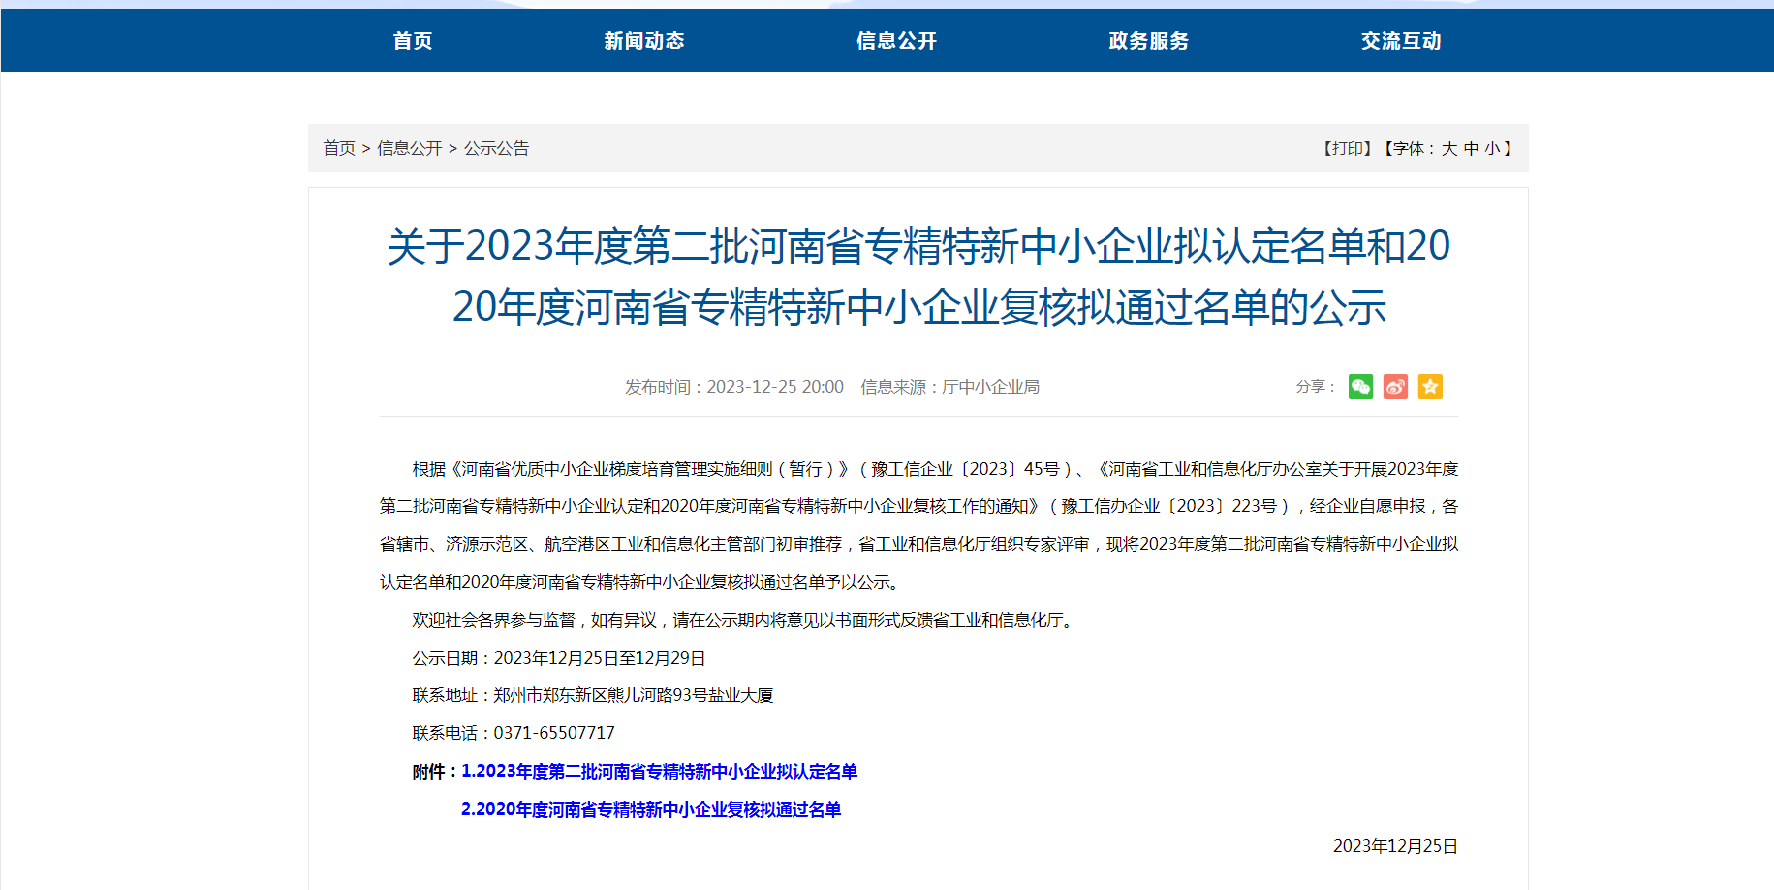 中犇检测认证有限公司顺利通过2023年度河南省专精特新中小企业认定